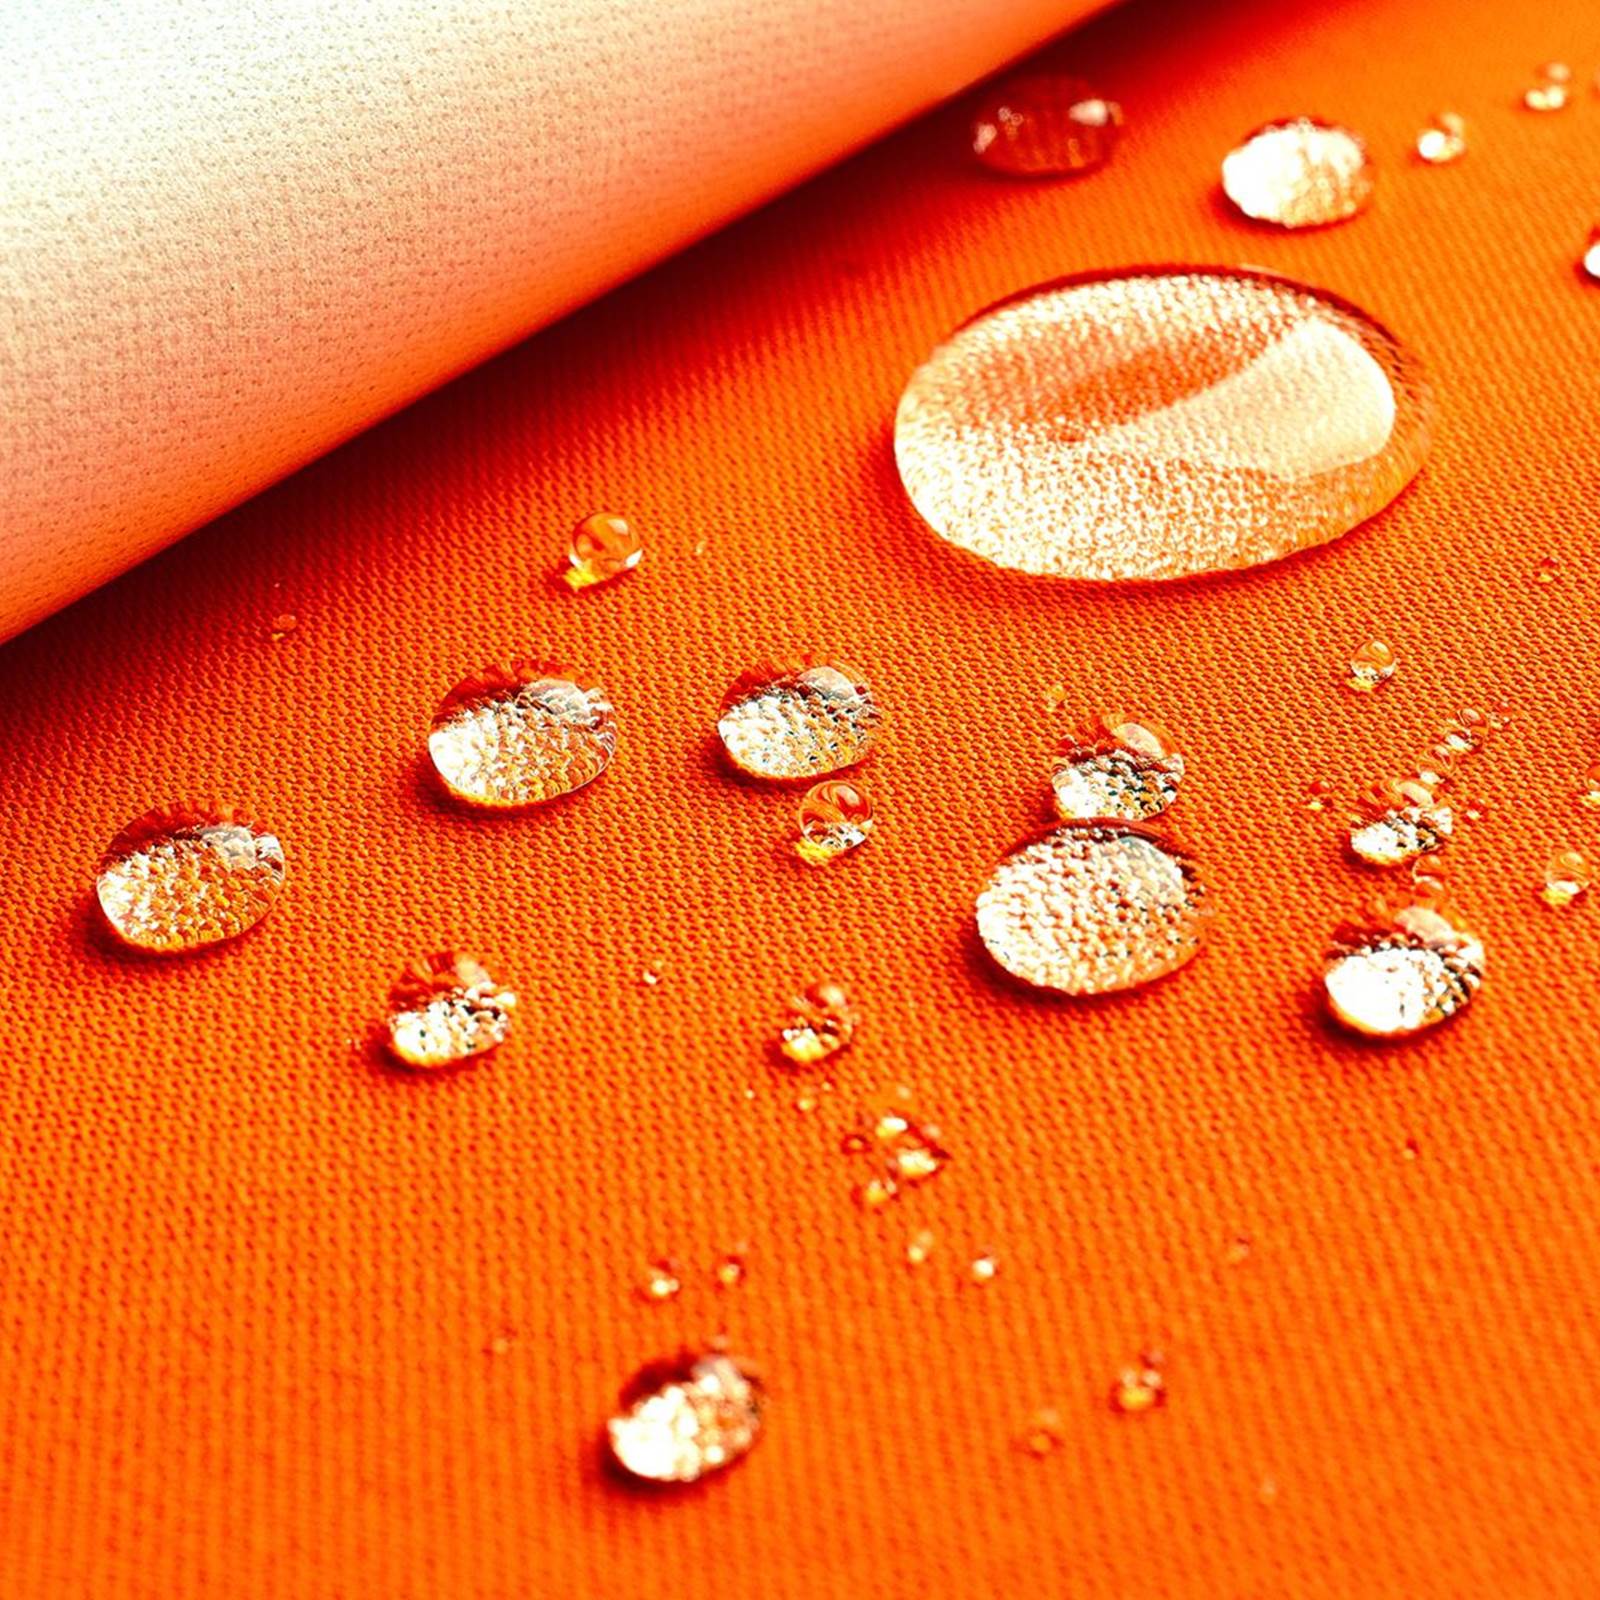 "Greta" - Tessuto esterno in laminato - antivento impermeabile e traspirante - Arancione neon